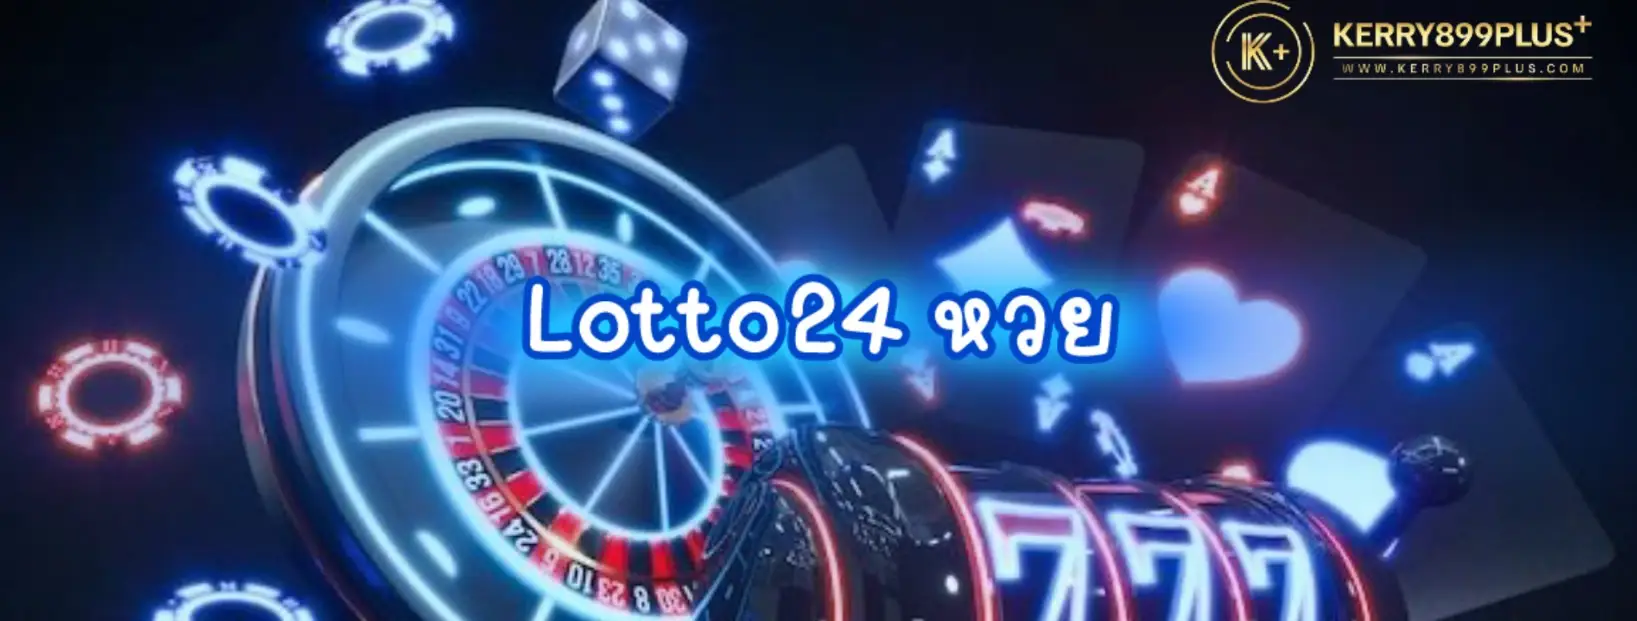 เข้าร่วมสนุกสุดพิเศษกับเกมสล็อตที่มีโอกาสชนะมากมายกับ Lotto 24 หวย!